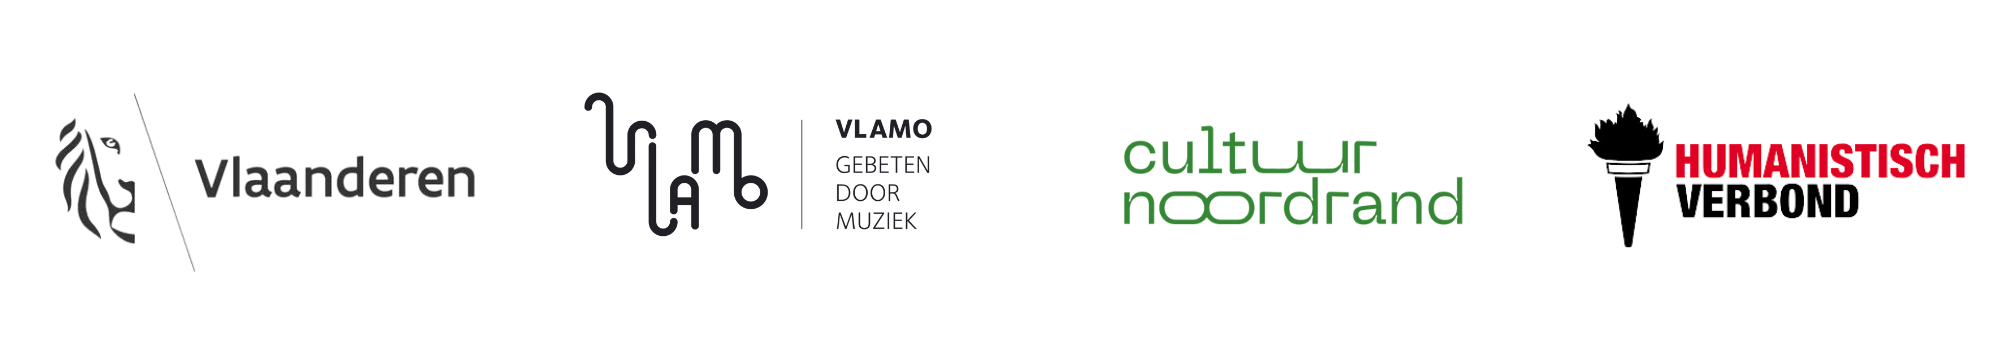 Logo's Vlaanderen, VLAMO, Cultuur Noordrand en Humanistisch Verbond